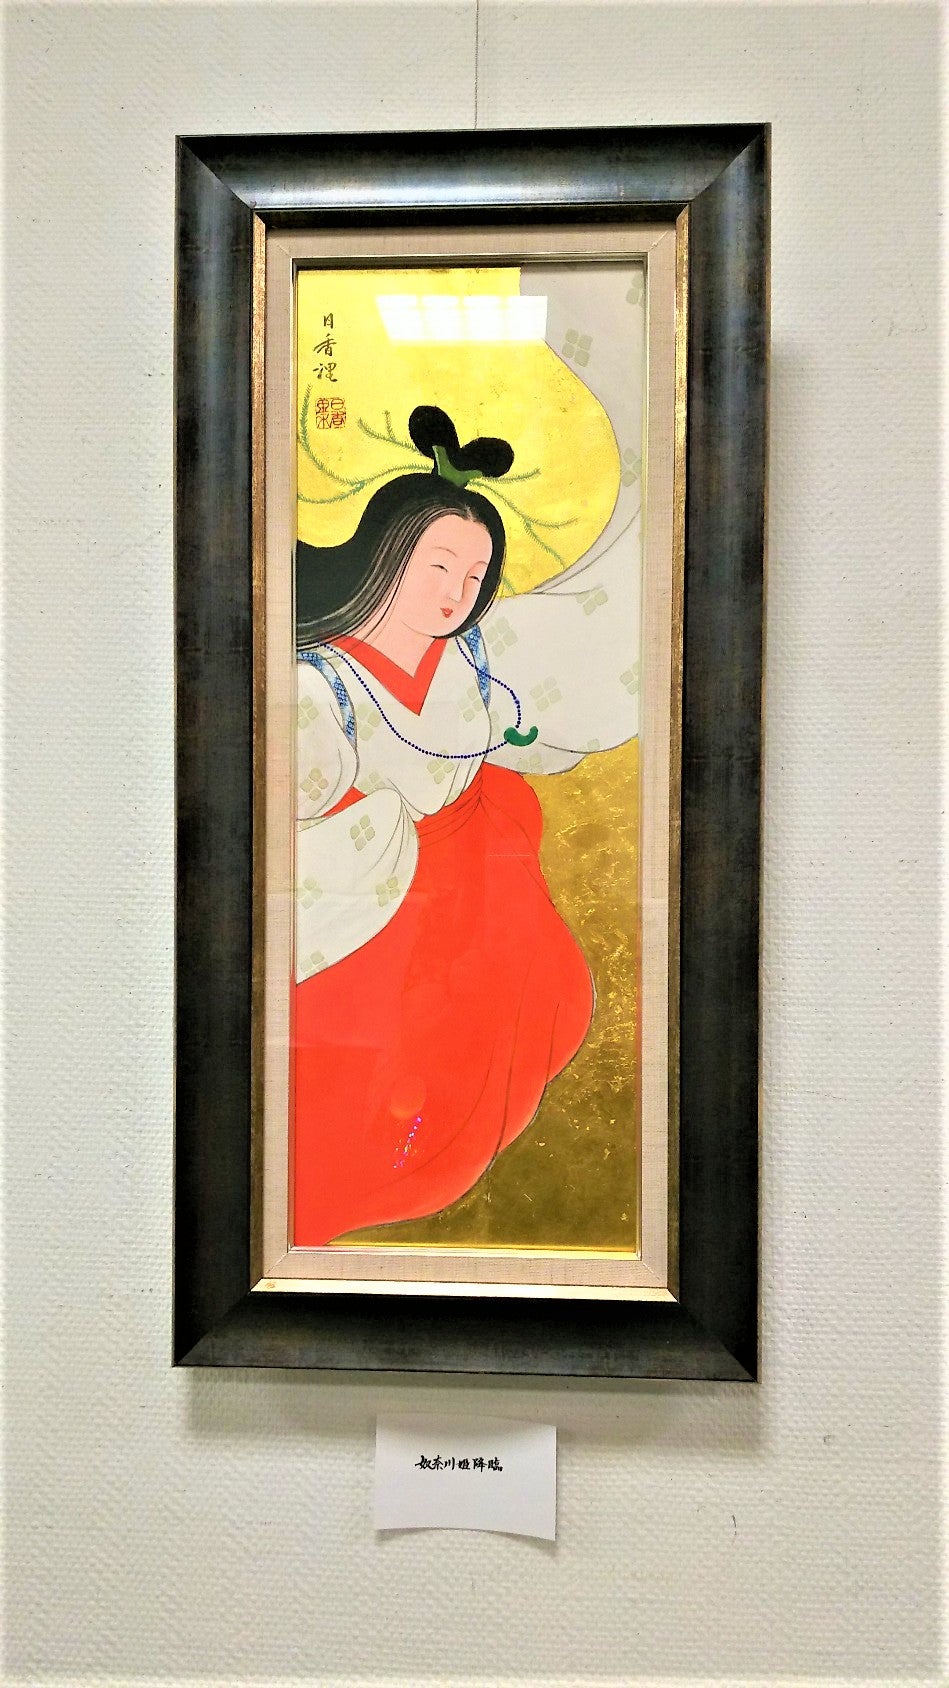 日本画家 川崎 日香浬先生と越の奴奈川姫展 | mimosa-iの猫と神社と 